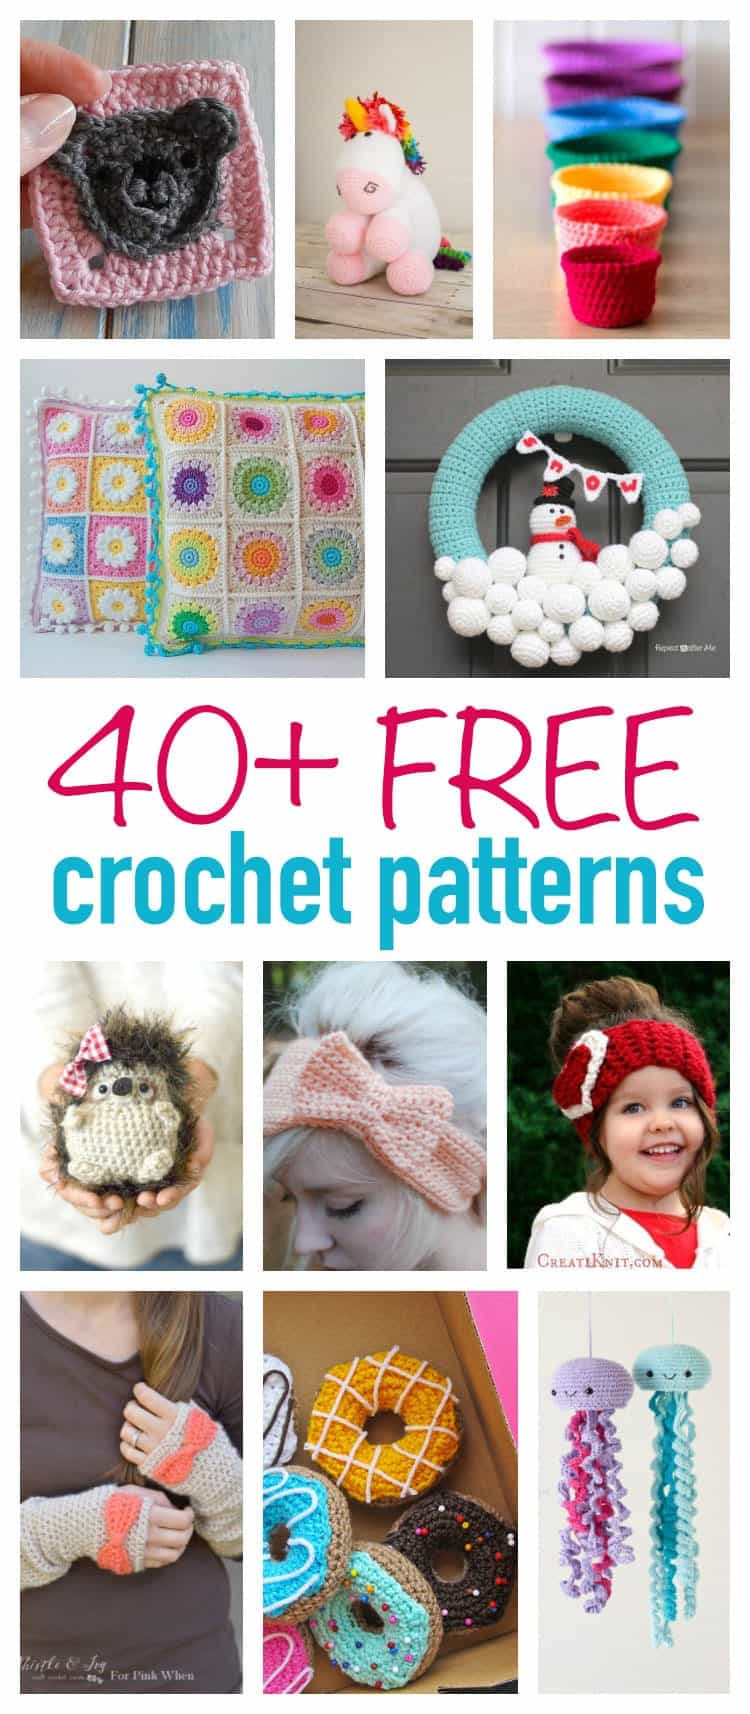 Modern Crochet Patterns Free Free Crochet Patterns Over 40 Crochet Tutorials And Ideas